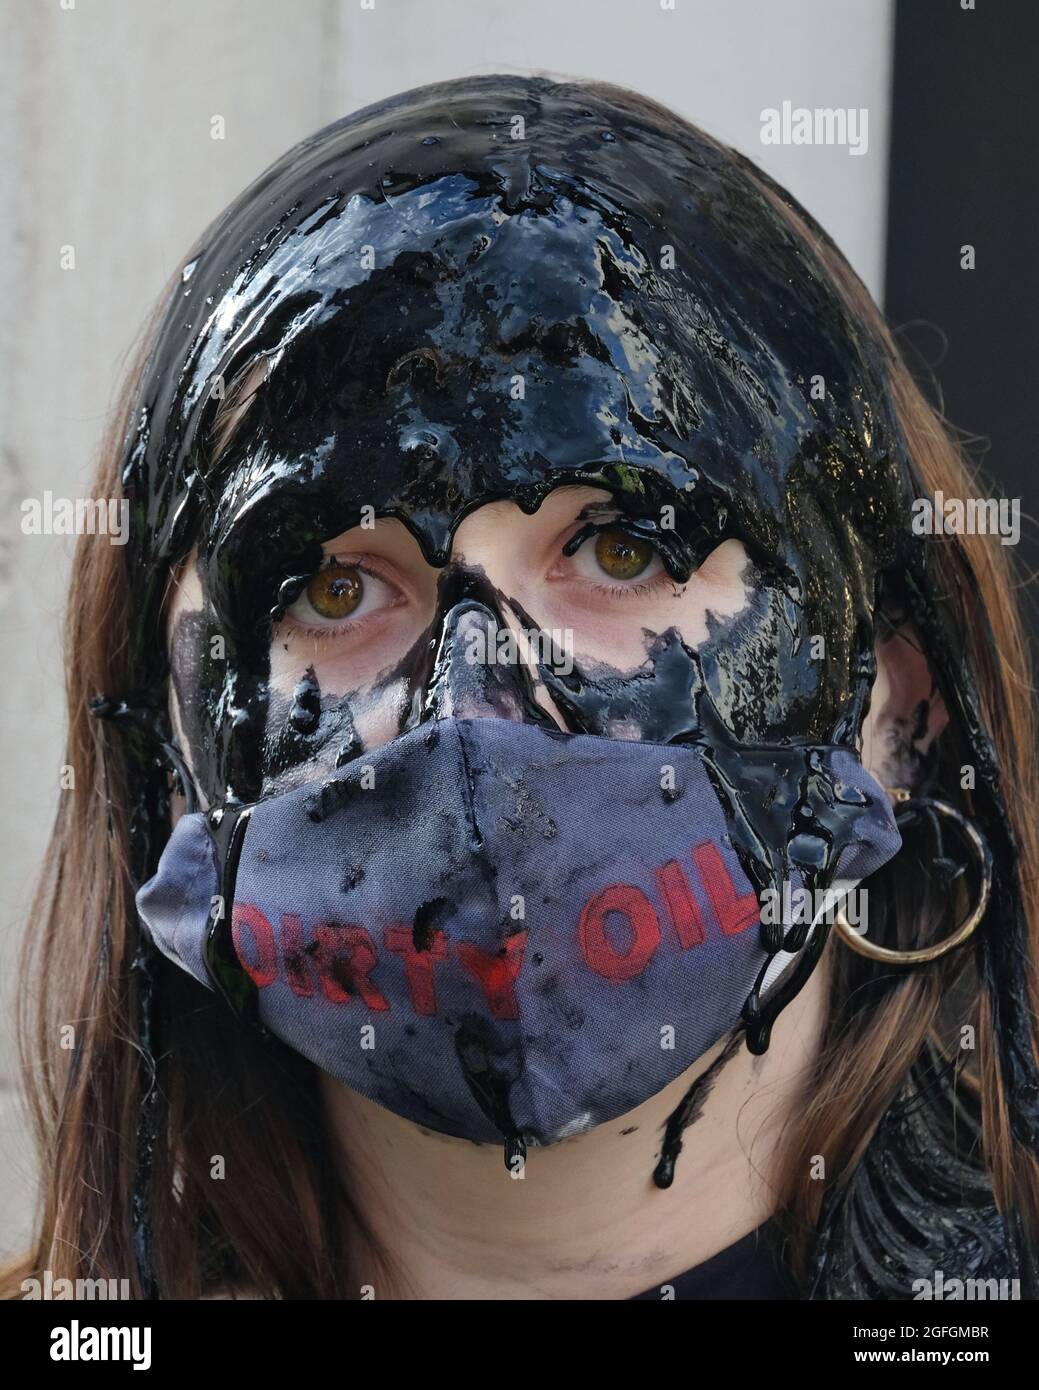 Londres, Reino Unido. Una mujer vierte aceite falso sobre su cabeza en una protesta para destacar las preocupaciones ambientales vinculadas a la industria de la moda rápida. Foto de stock